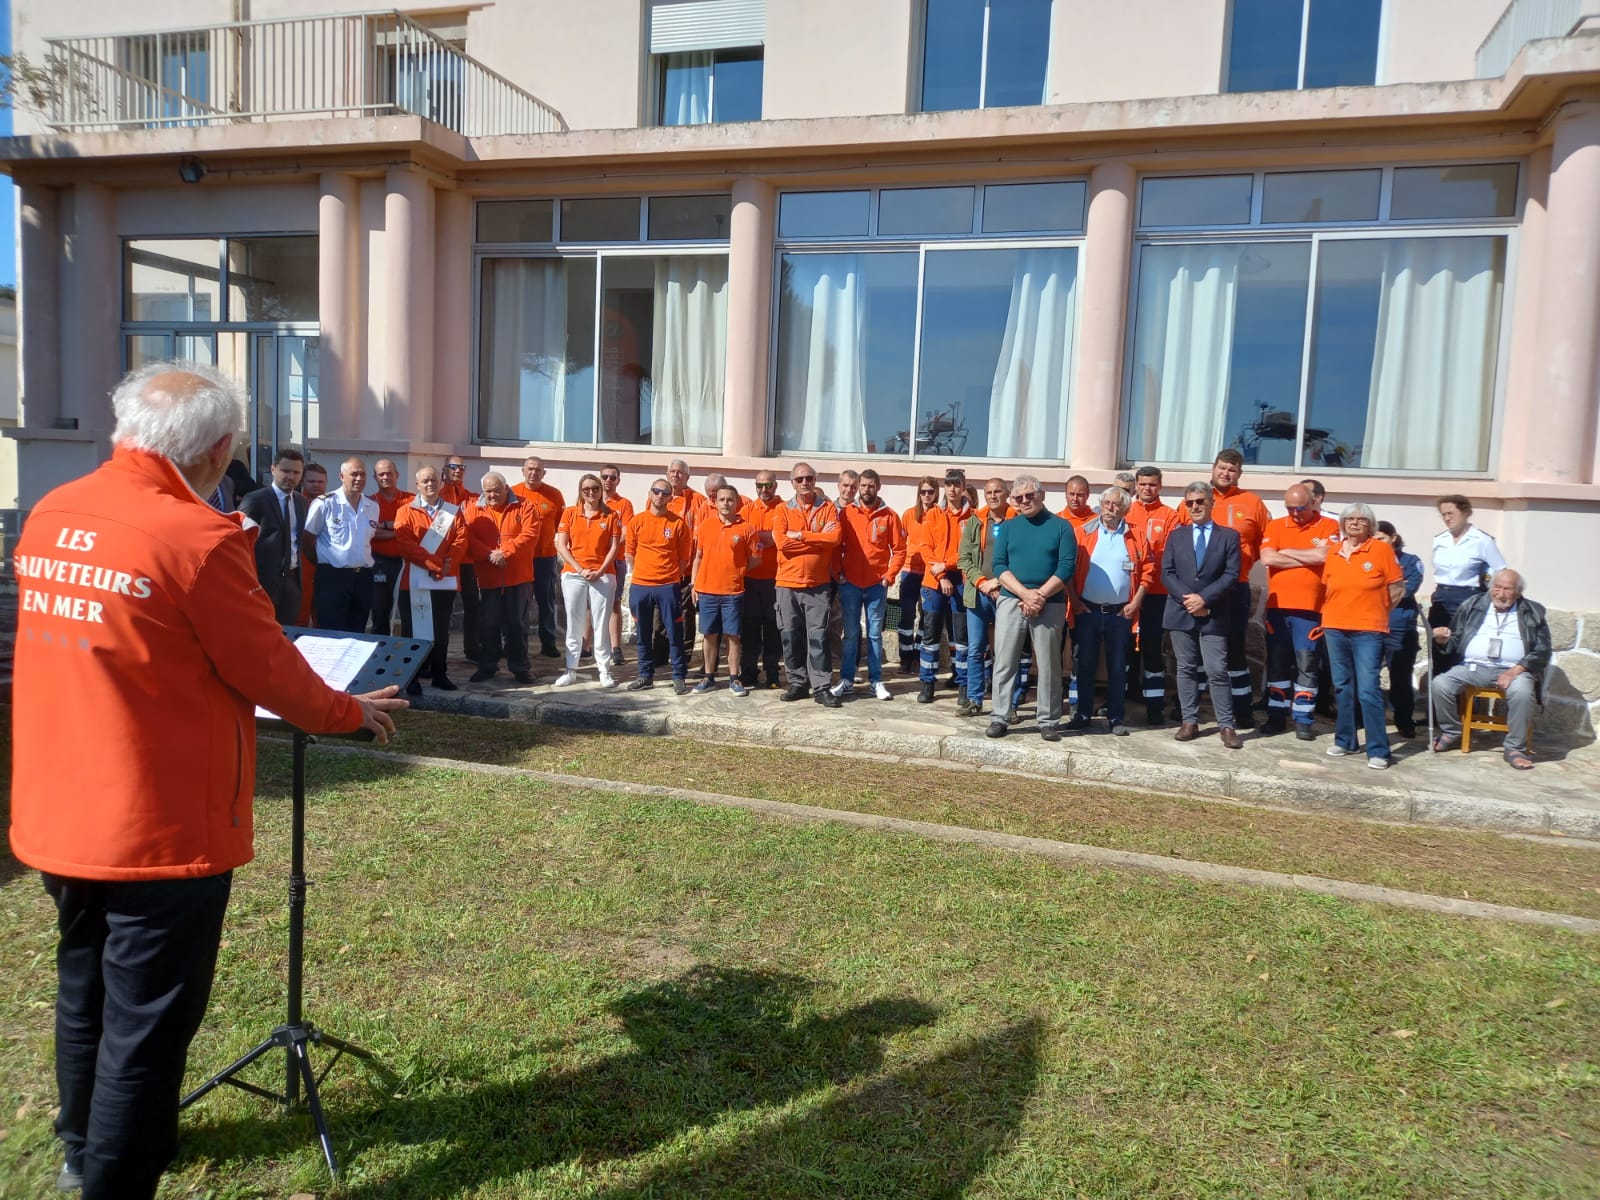 Les vedettes ont été inaugurées en fin d’après-midi à la base navale d’Ajaccio devant les autorités politiques, militaires et un équipage d'une quinzaine de membres.